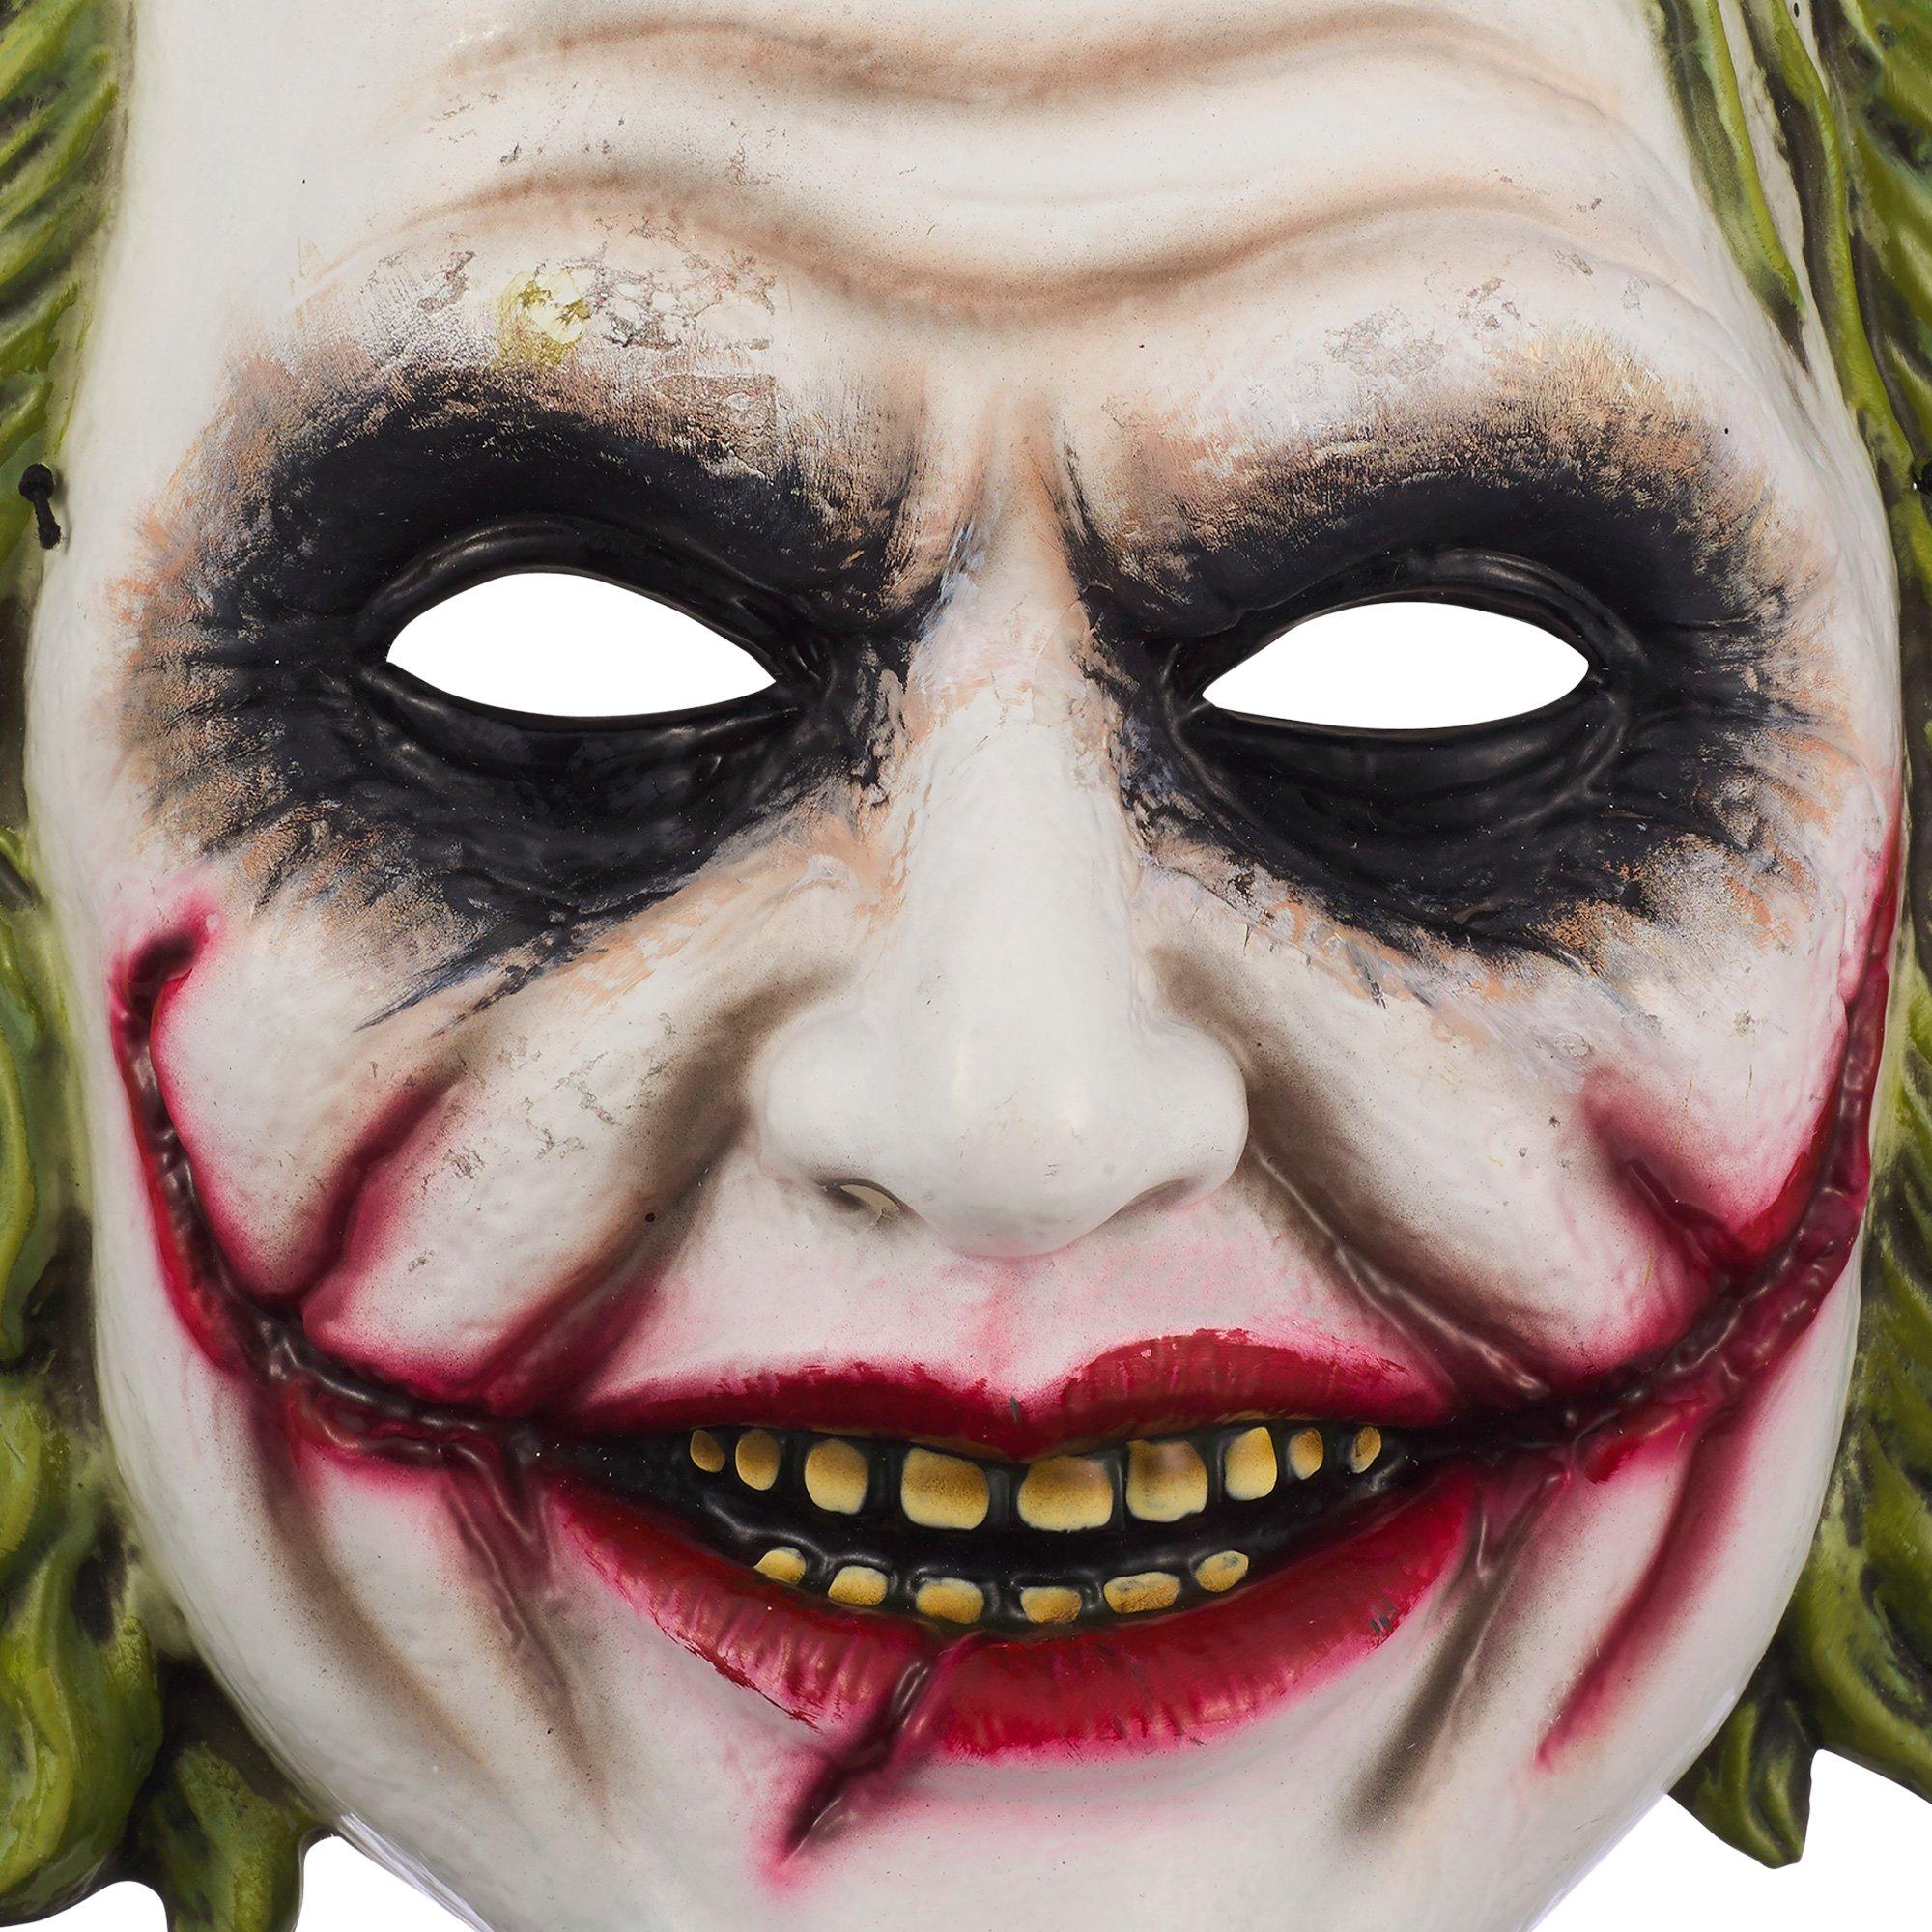 Adult Joker Mask - Dark Knight